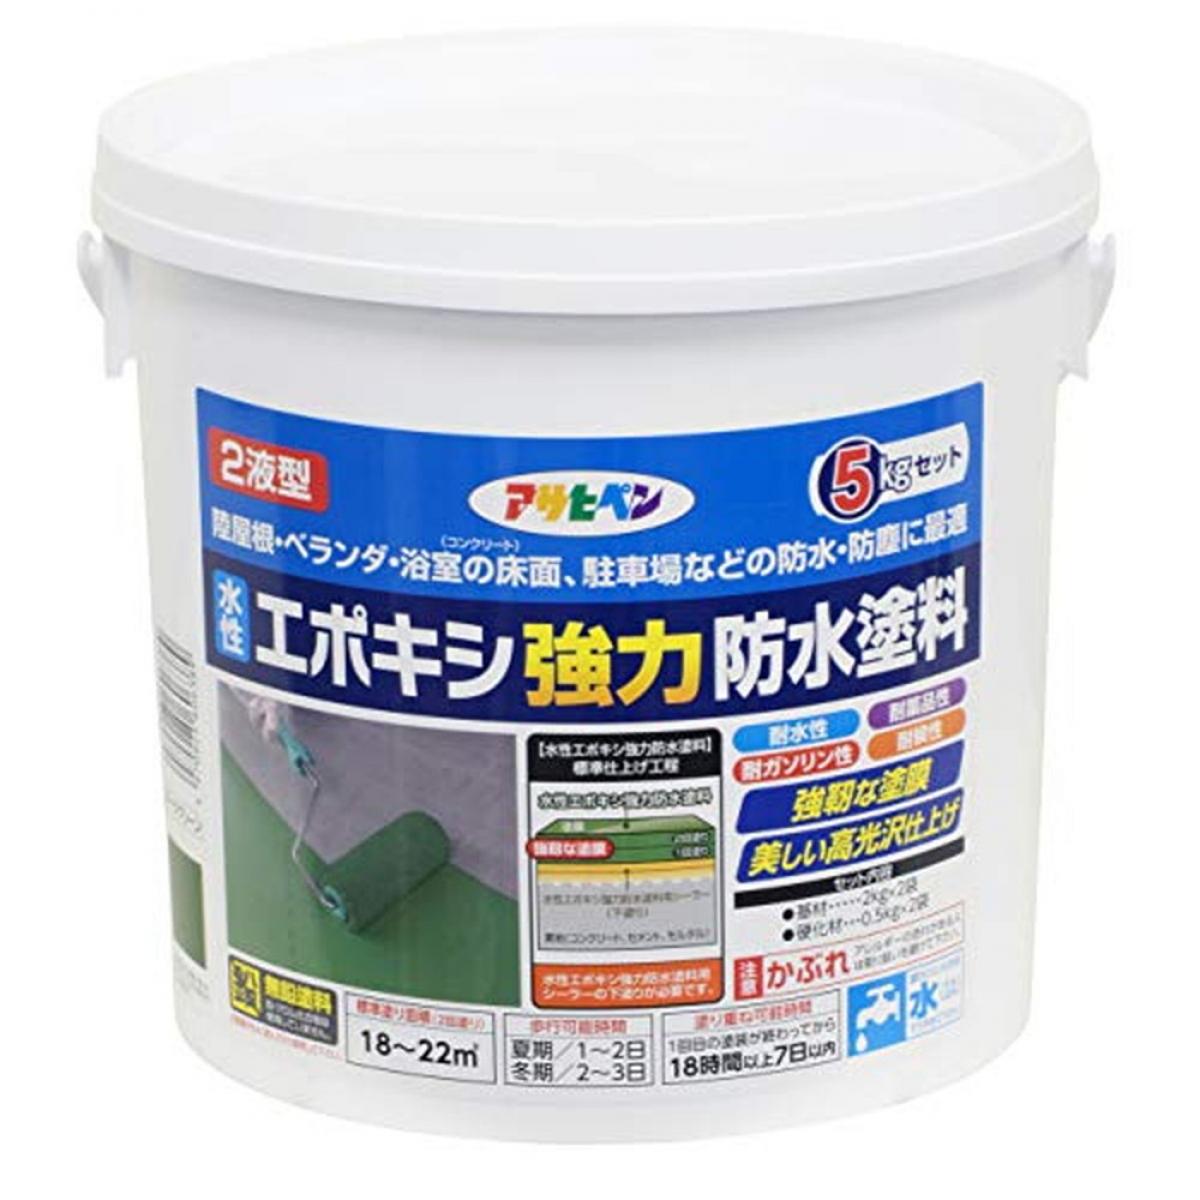 品質一番の 防水塗料 アサヒペン(Asahipen) 水性エポキシ強力防水塗料